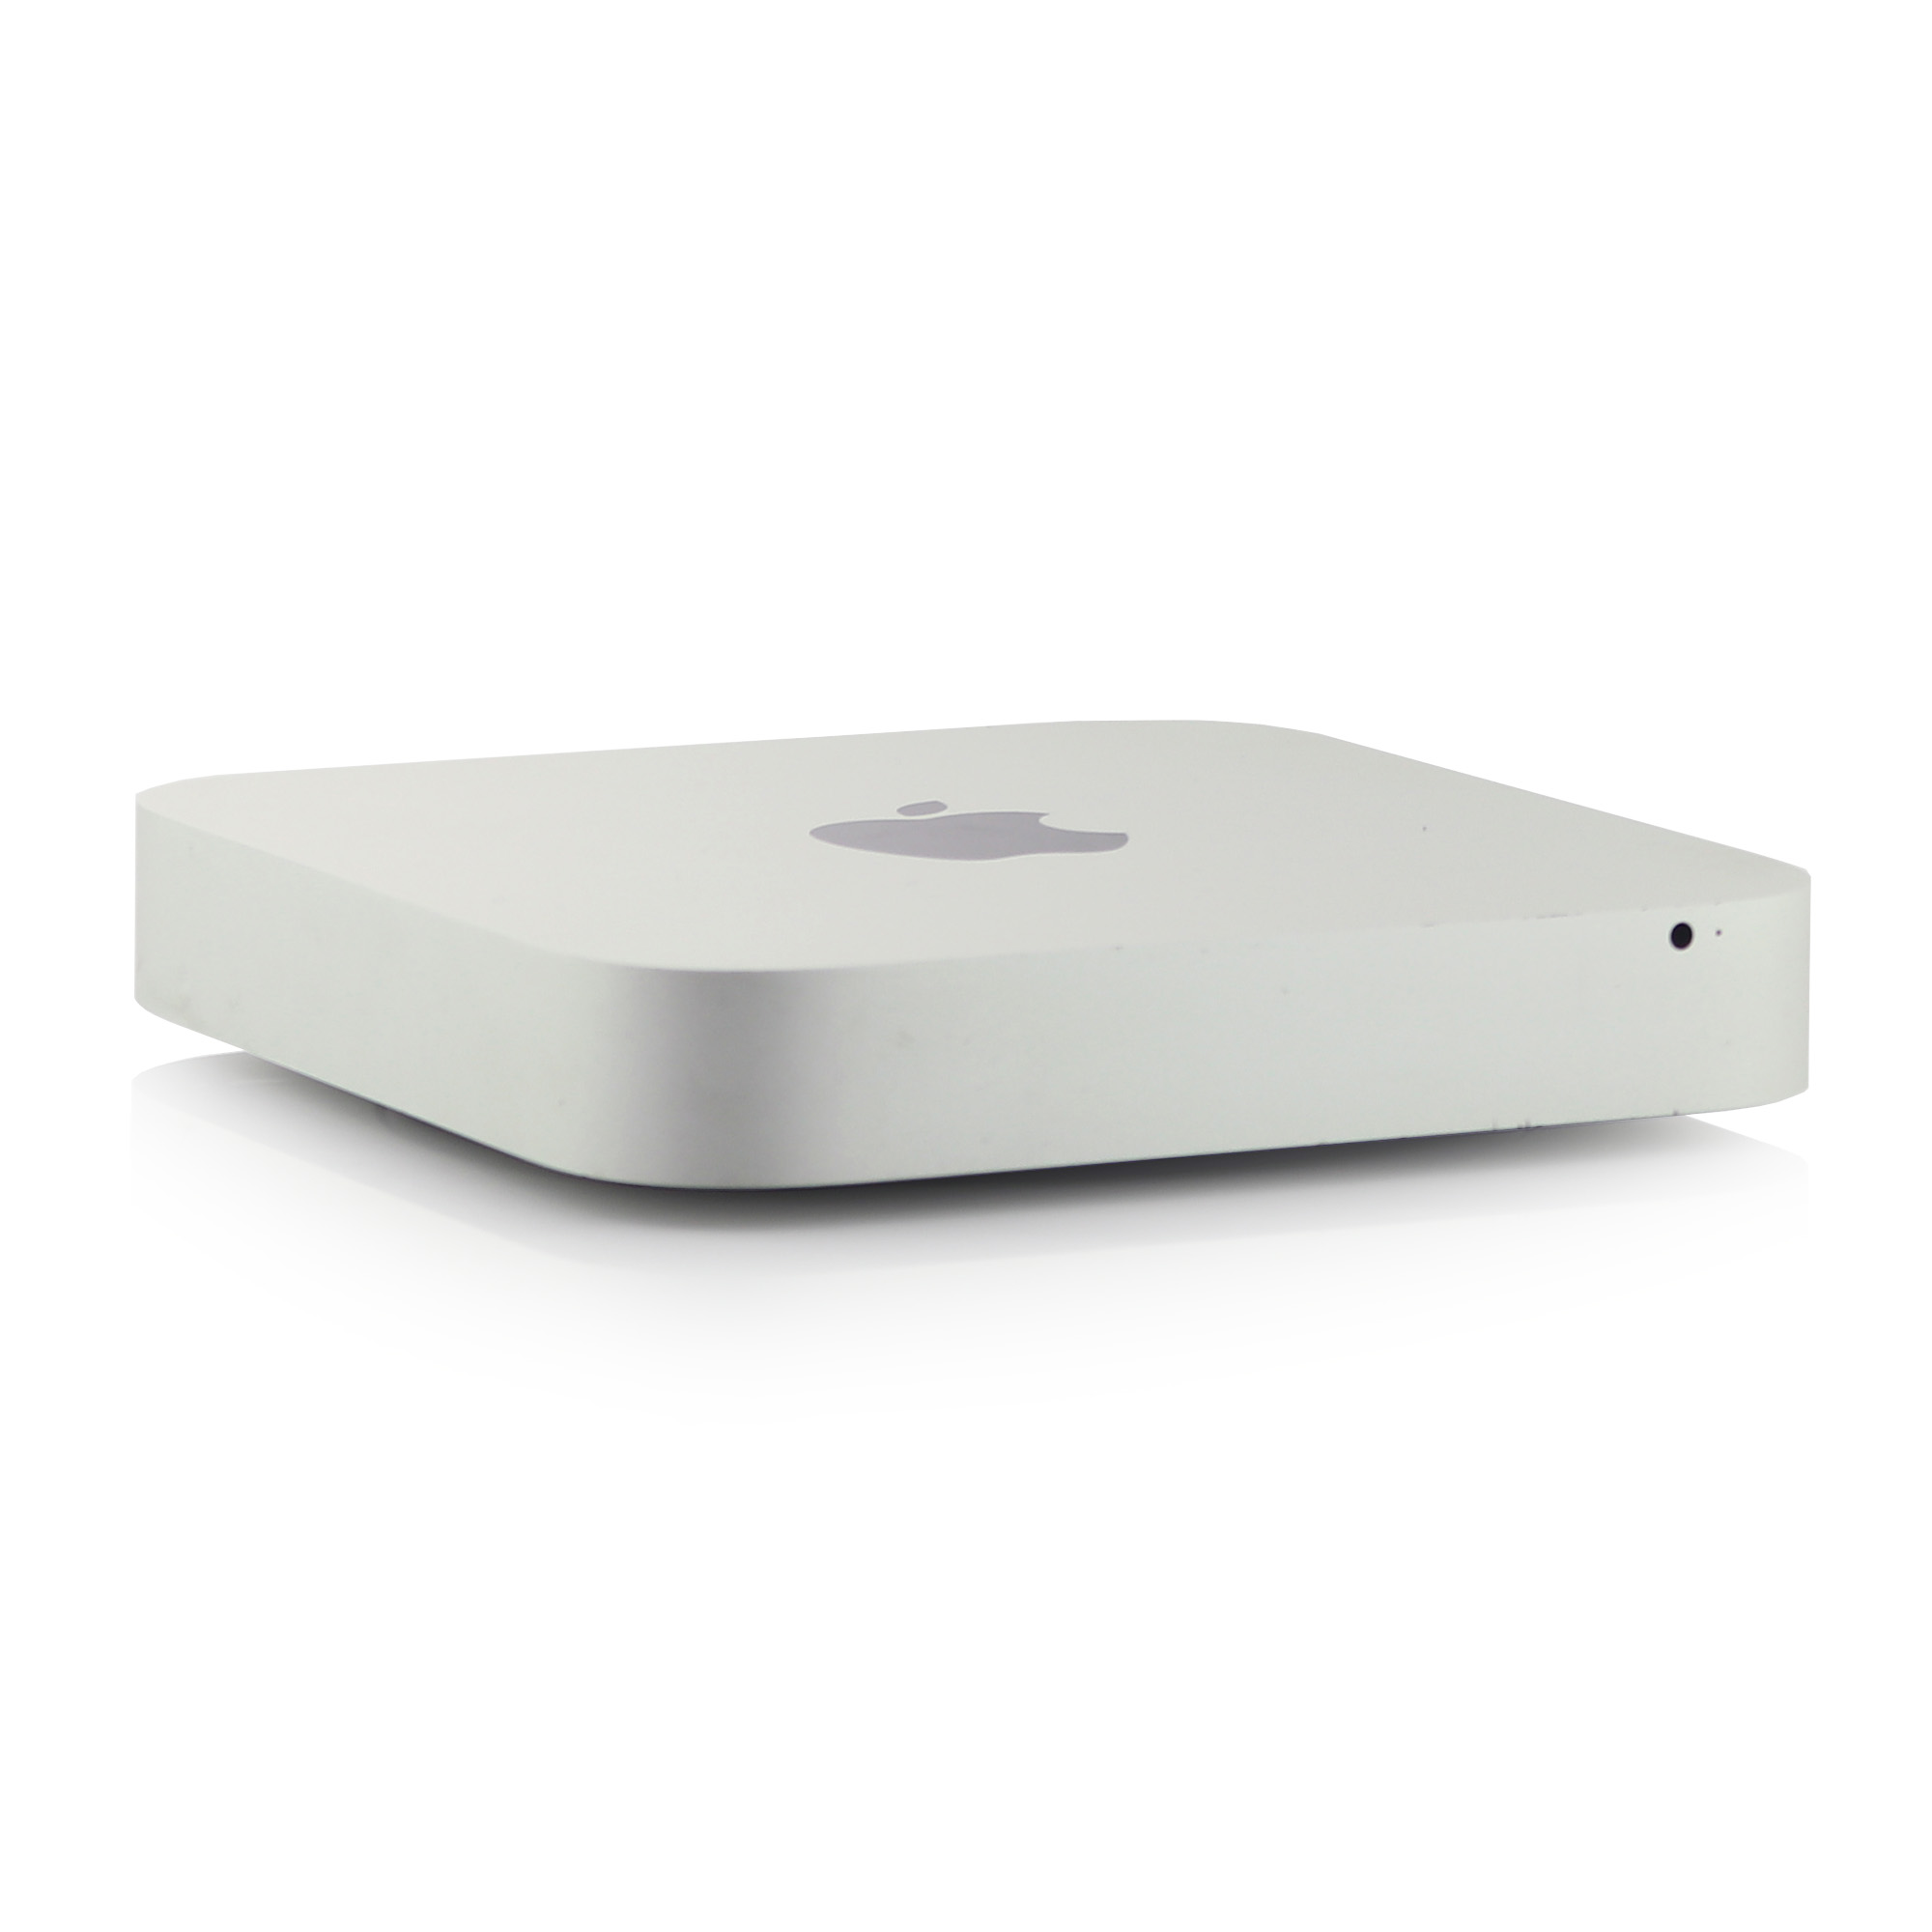 2014 Apple Mac mini Intel i7 3.00 GHz 2-core 16GB 256GB - 